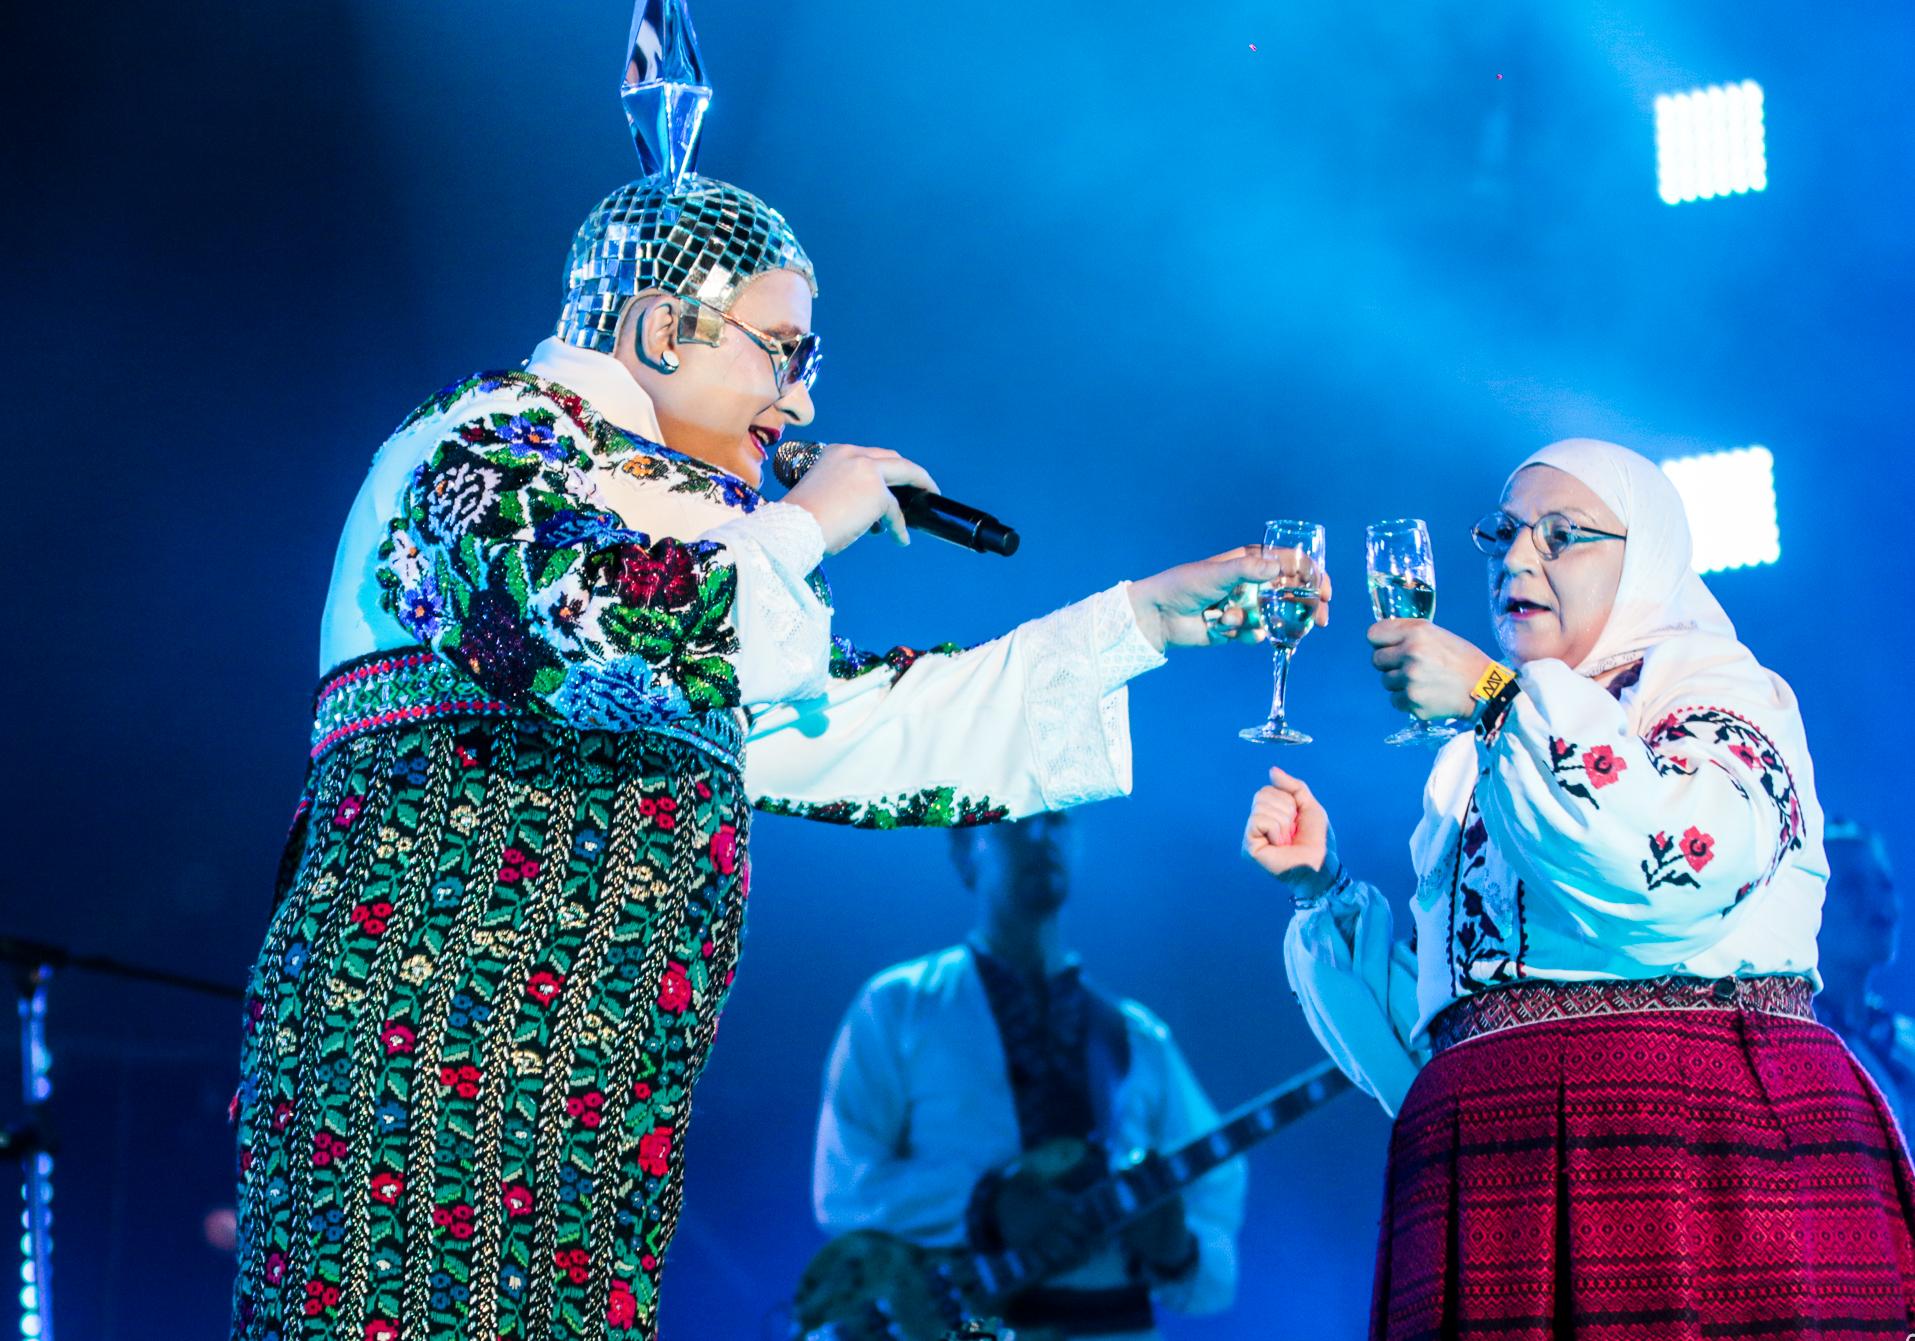 Верка Сердючка выступит на "Евровидении-2019" в Израиле / Oli Zitch / flickr